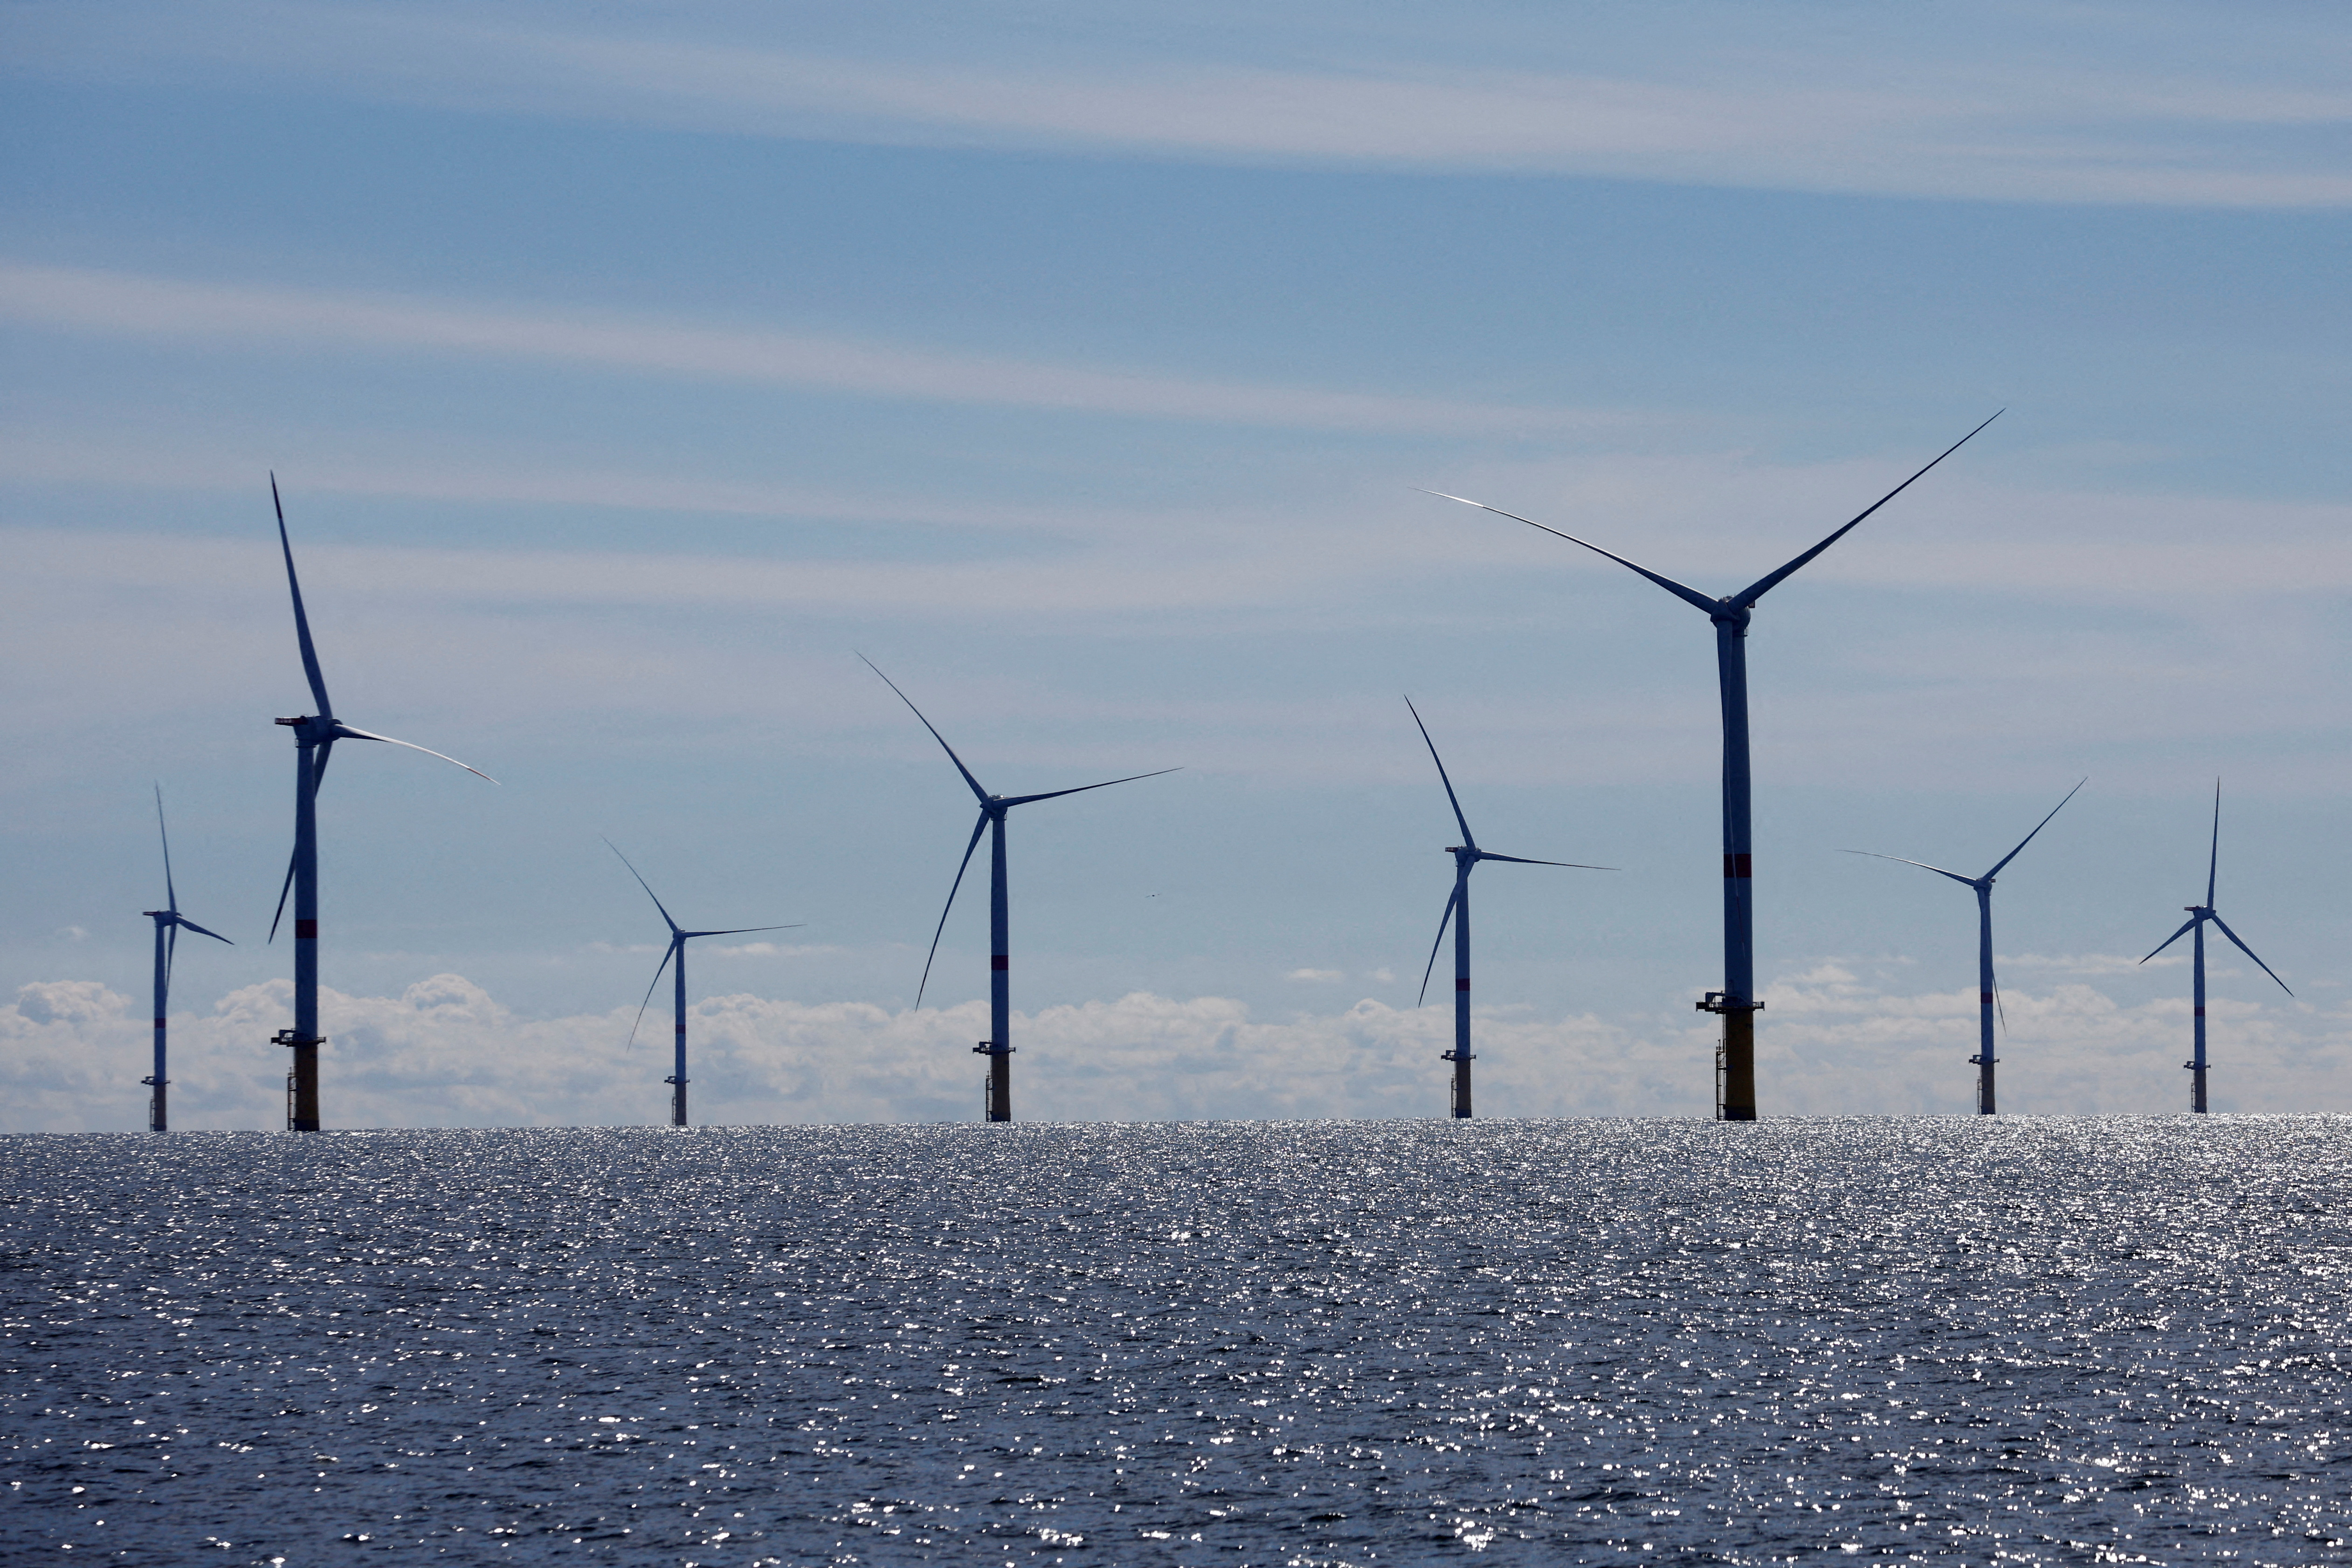 The Saint-Nazaire offshore wind farm